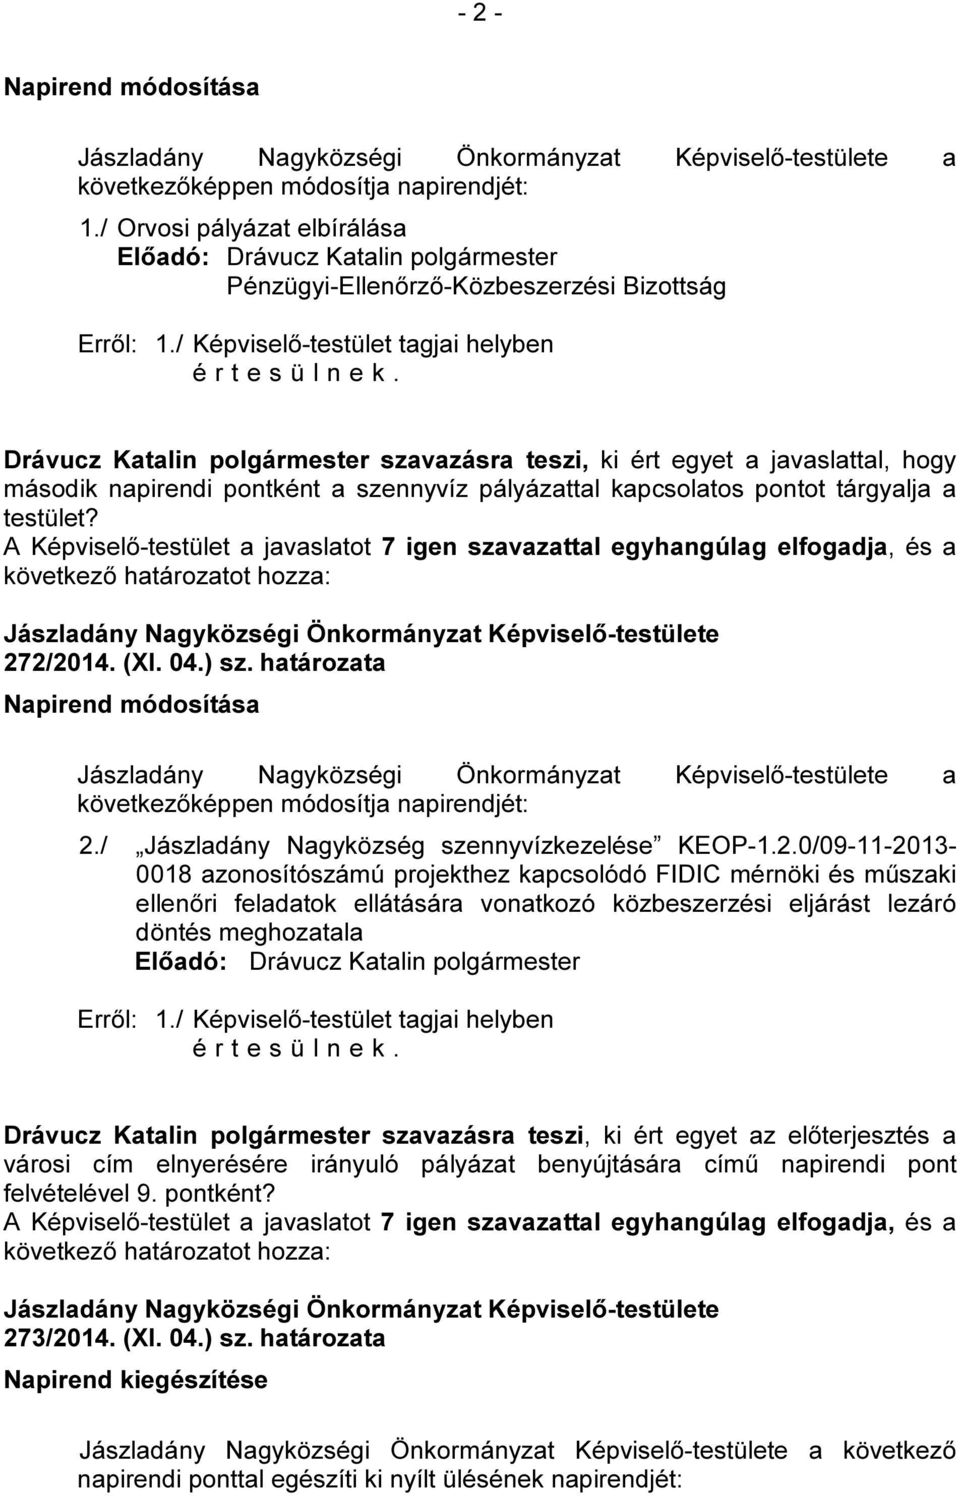 testület? 272/2014. (XI. 04.) sz. határozata Napirend módosítása a következőképpen módosítja napirendjét: 2./ Jászladány Nagyközség szennyvízkezelése KEOP-1.2.0/09-11-2013-0018 azonosítószámú projekthez kapcsolódó FIDIC mérnöki és műszaki ellenőri feladatok ellátására vonatkozó közbeszerzési eljárást lezáró döntés meghozatala Erről: 1.